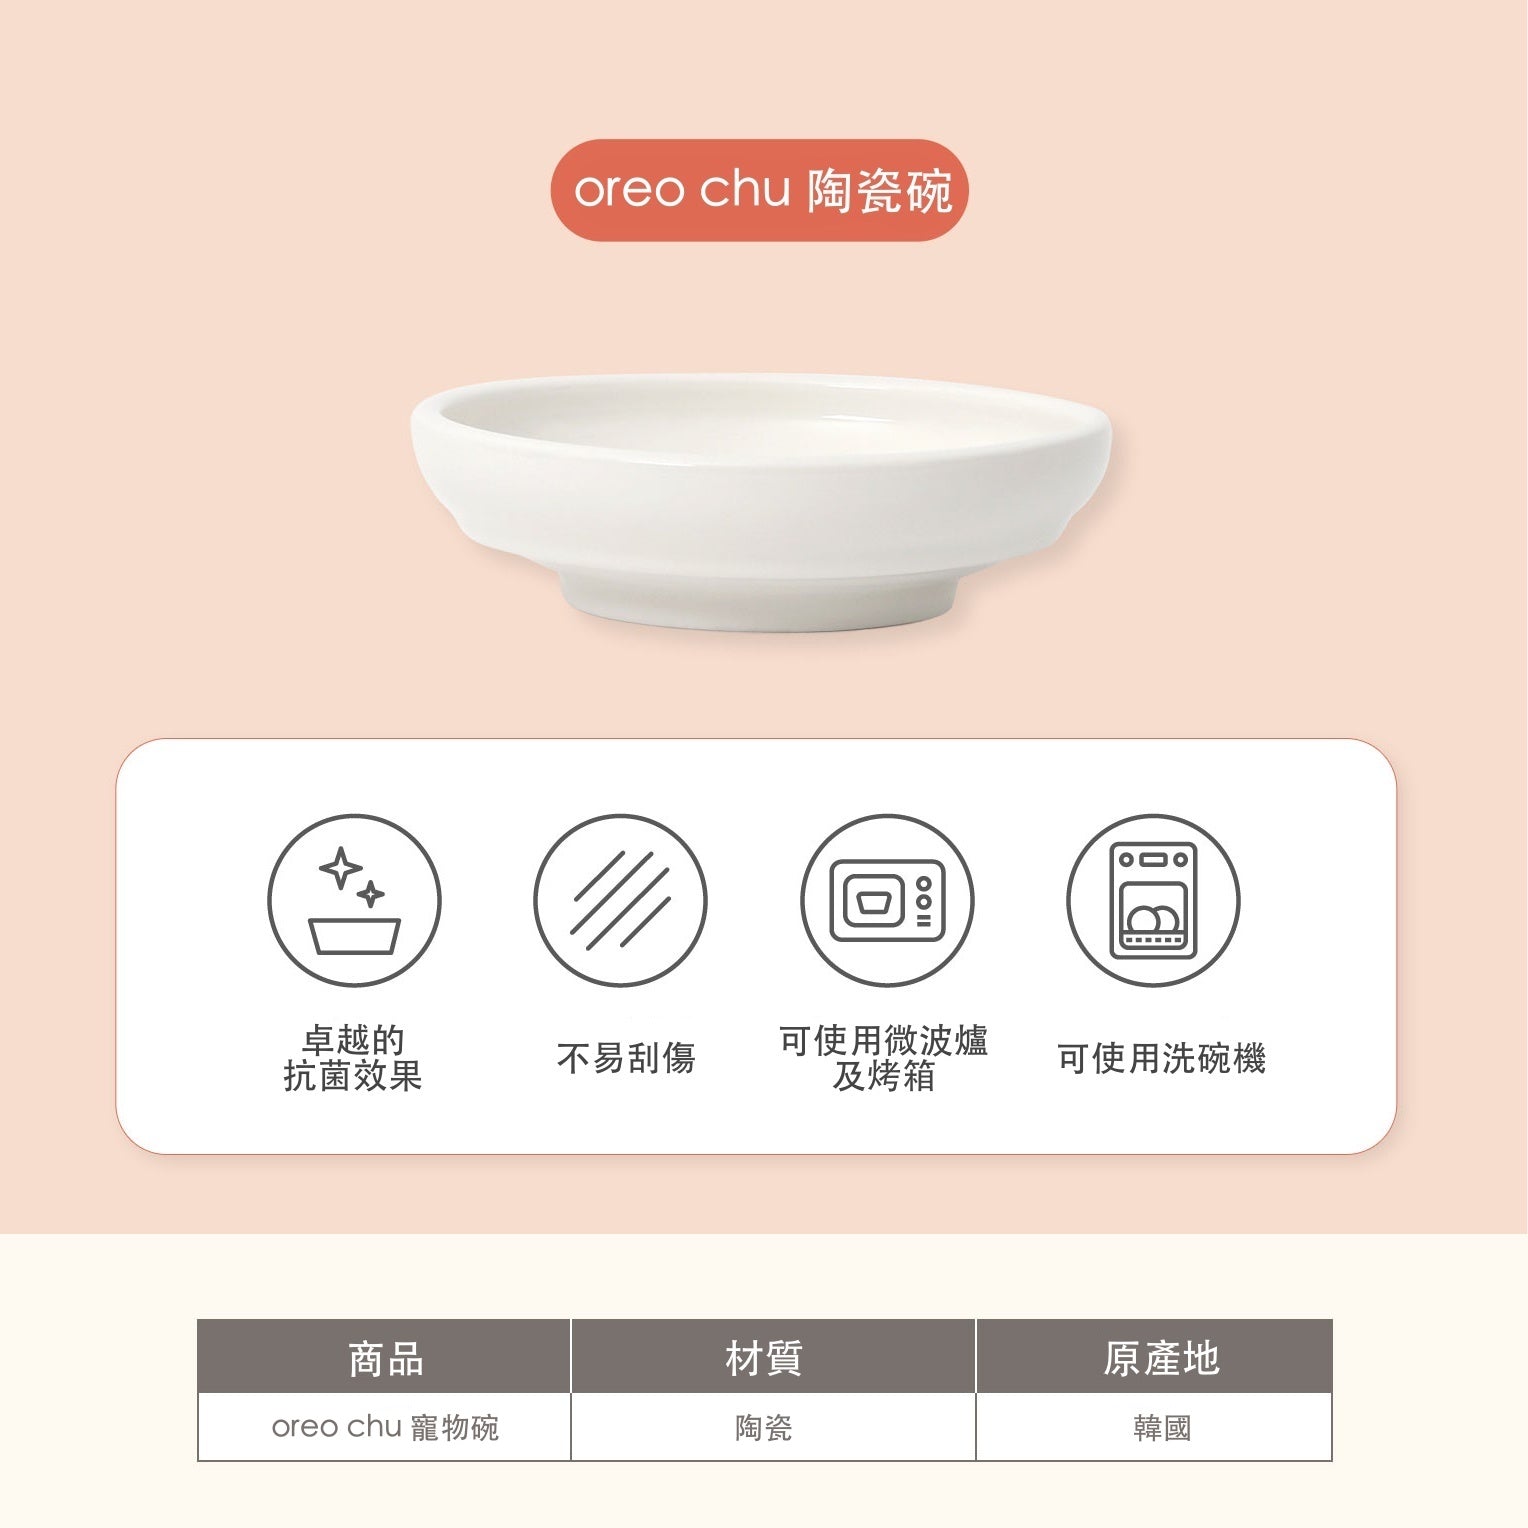 韓國 inherent 陶瓷寵物碗 oreo chu - 高品質寵物碗架組 - 特價 $TWD 1272｜LOVE PET FAMILY